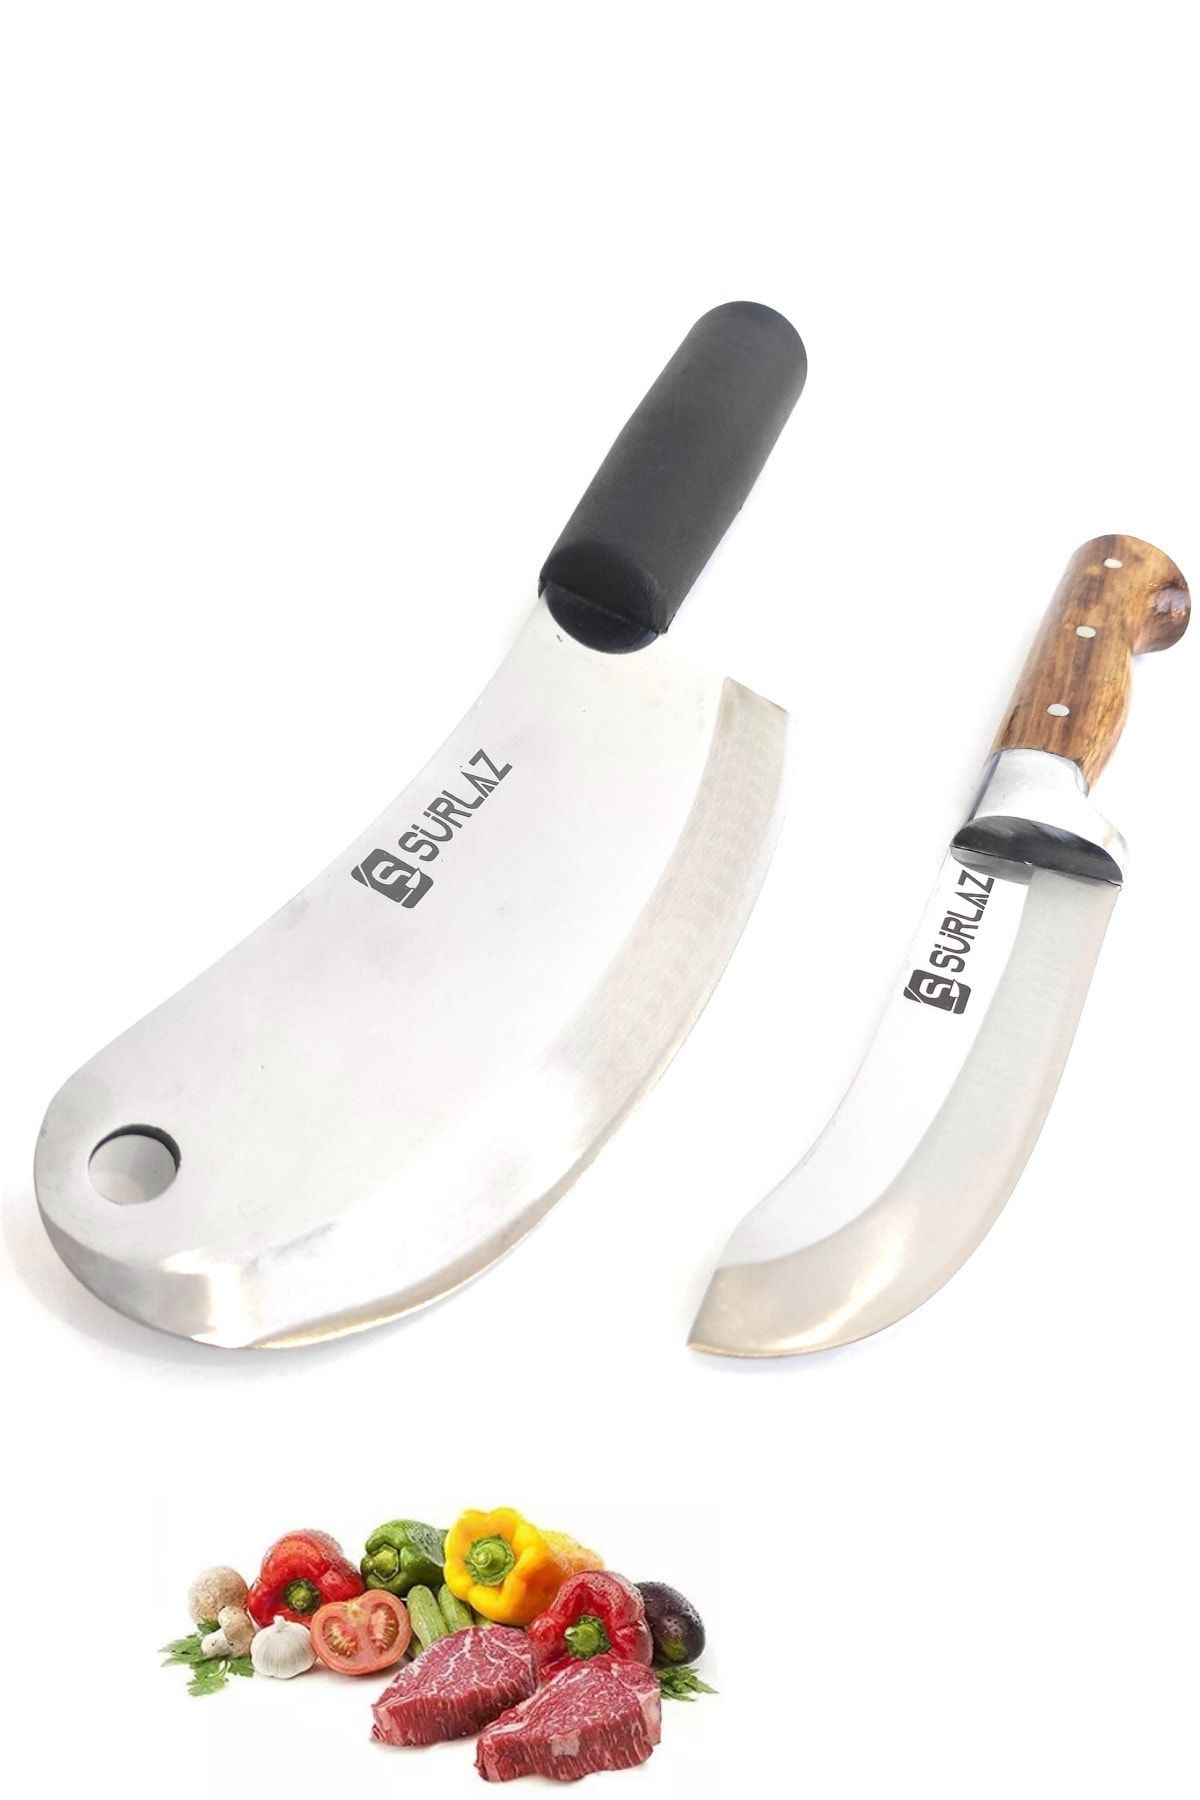 SürLaz Et Bıçak Seti Soğan Satırı Mutfak Bıçağı 2'li Takım Bıçak